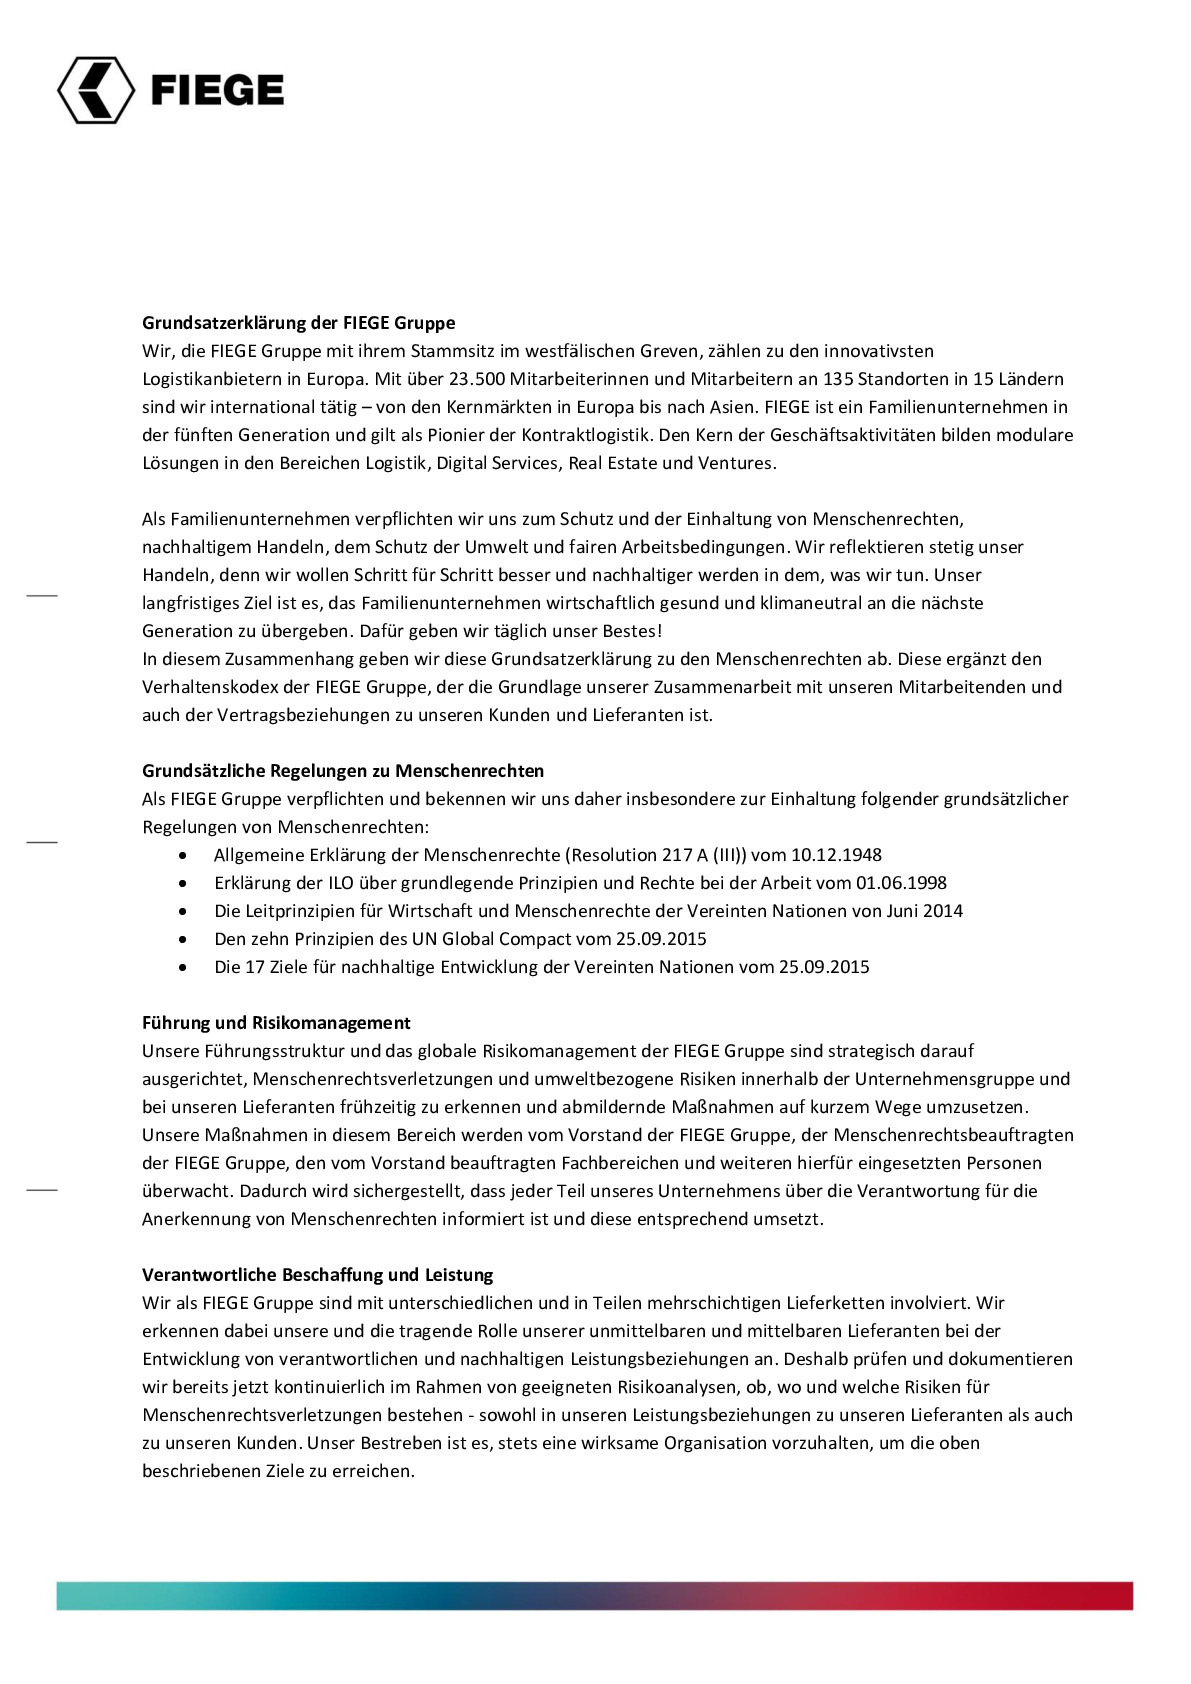 Grundsatzerklarung der FIEGE Gruppe.pdf